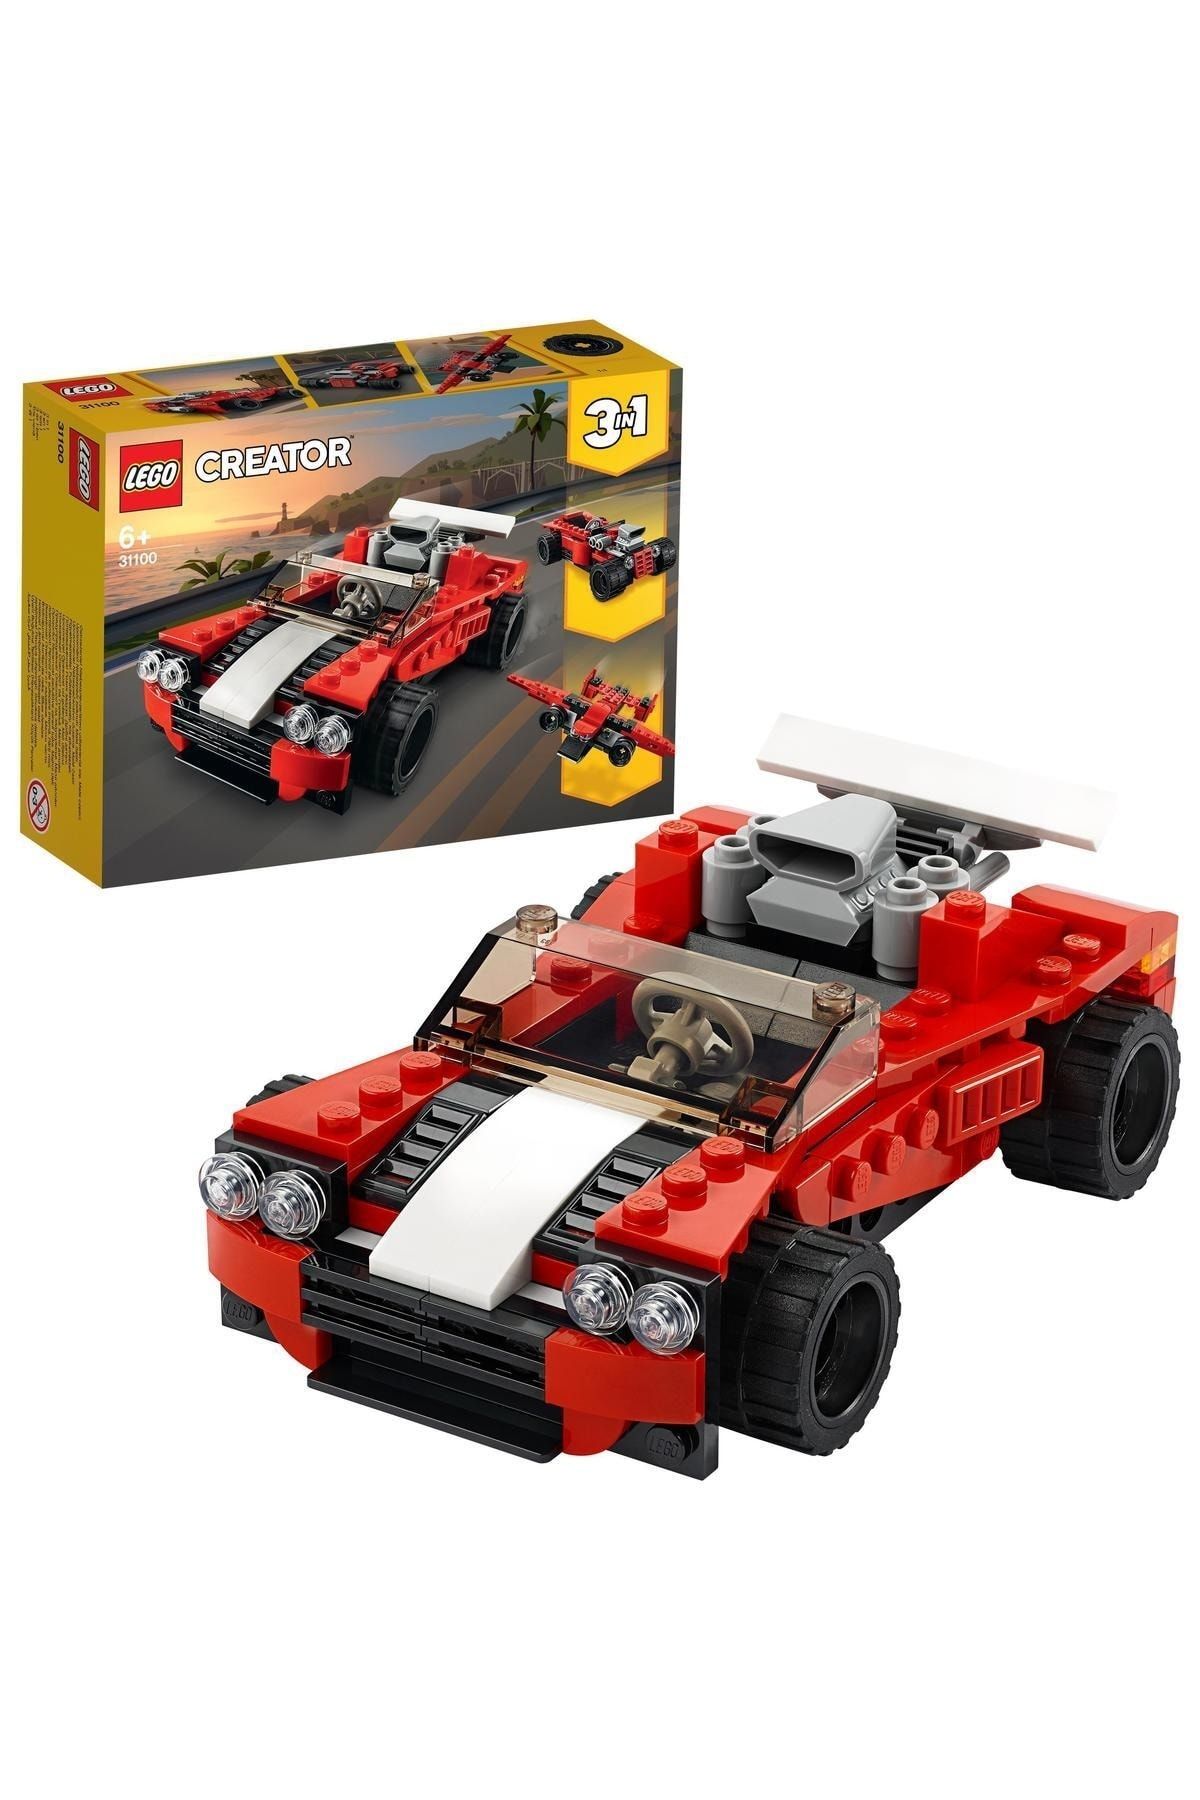 LEGO Creator Spor Araba 31100